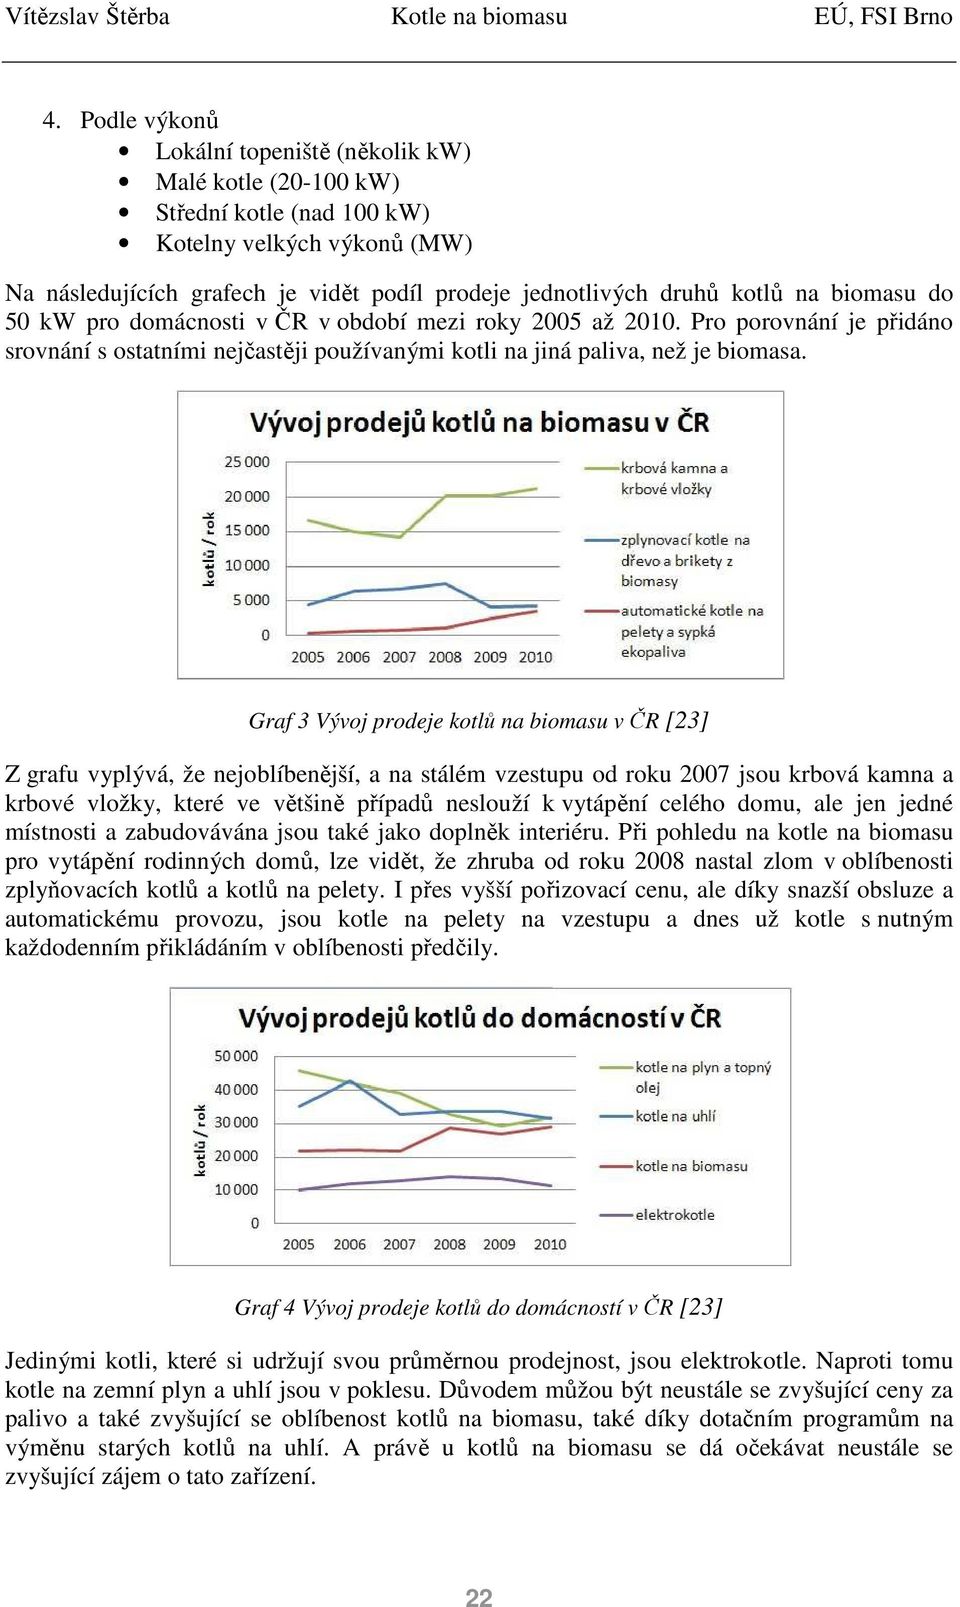 Graf 3 Vývoj prodeje kotlů na biomasu v ČR [23] Z grafu vyplývá, že nejoblíbenější, a na stálém vzestupu od roku 2007 jsou krbová kamna a krbové vložky, které ve většině případů neslouží k vytápění